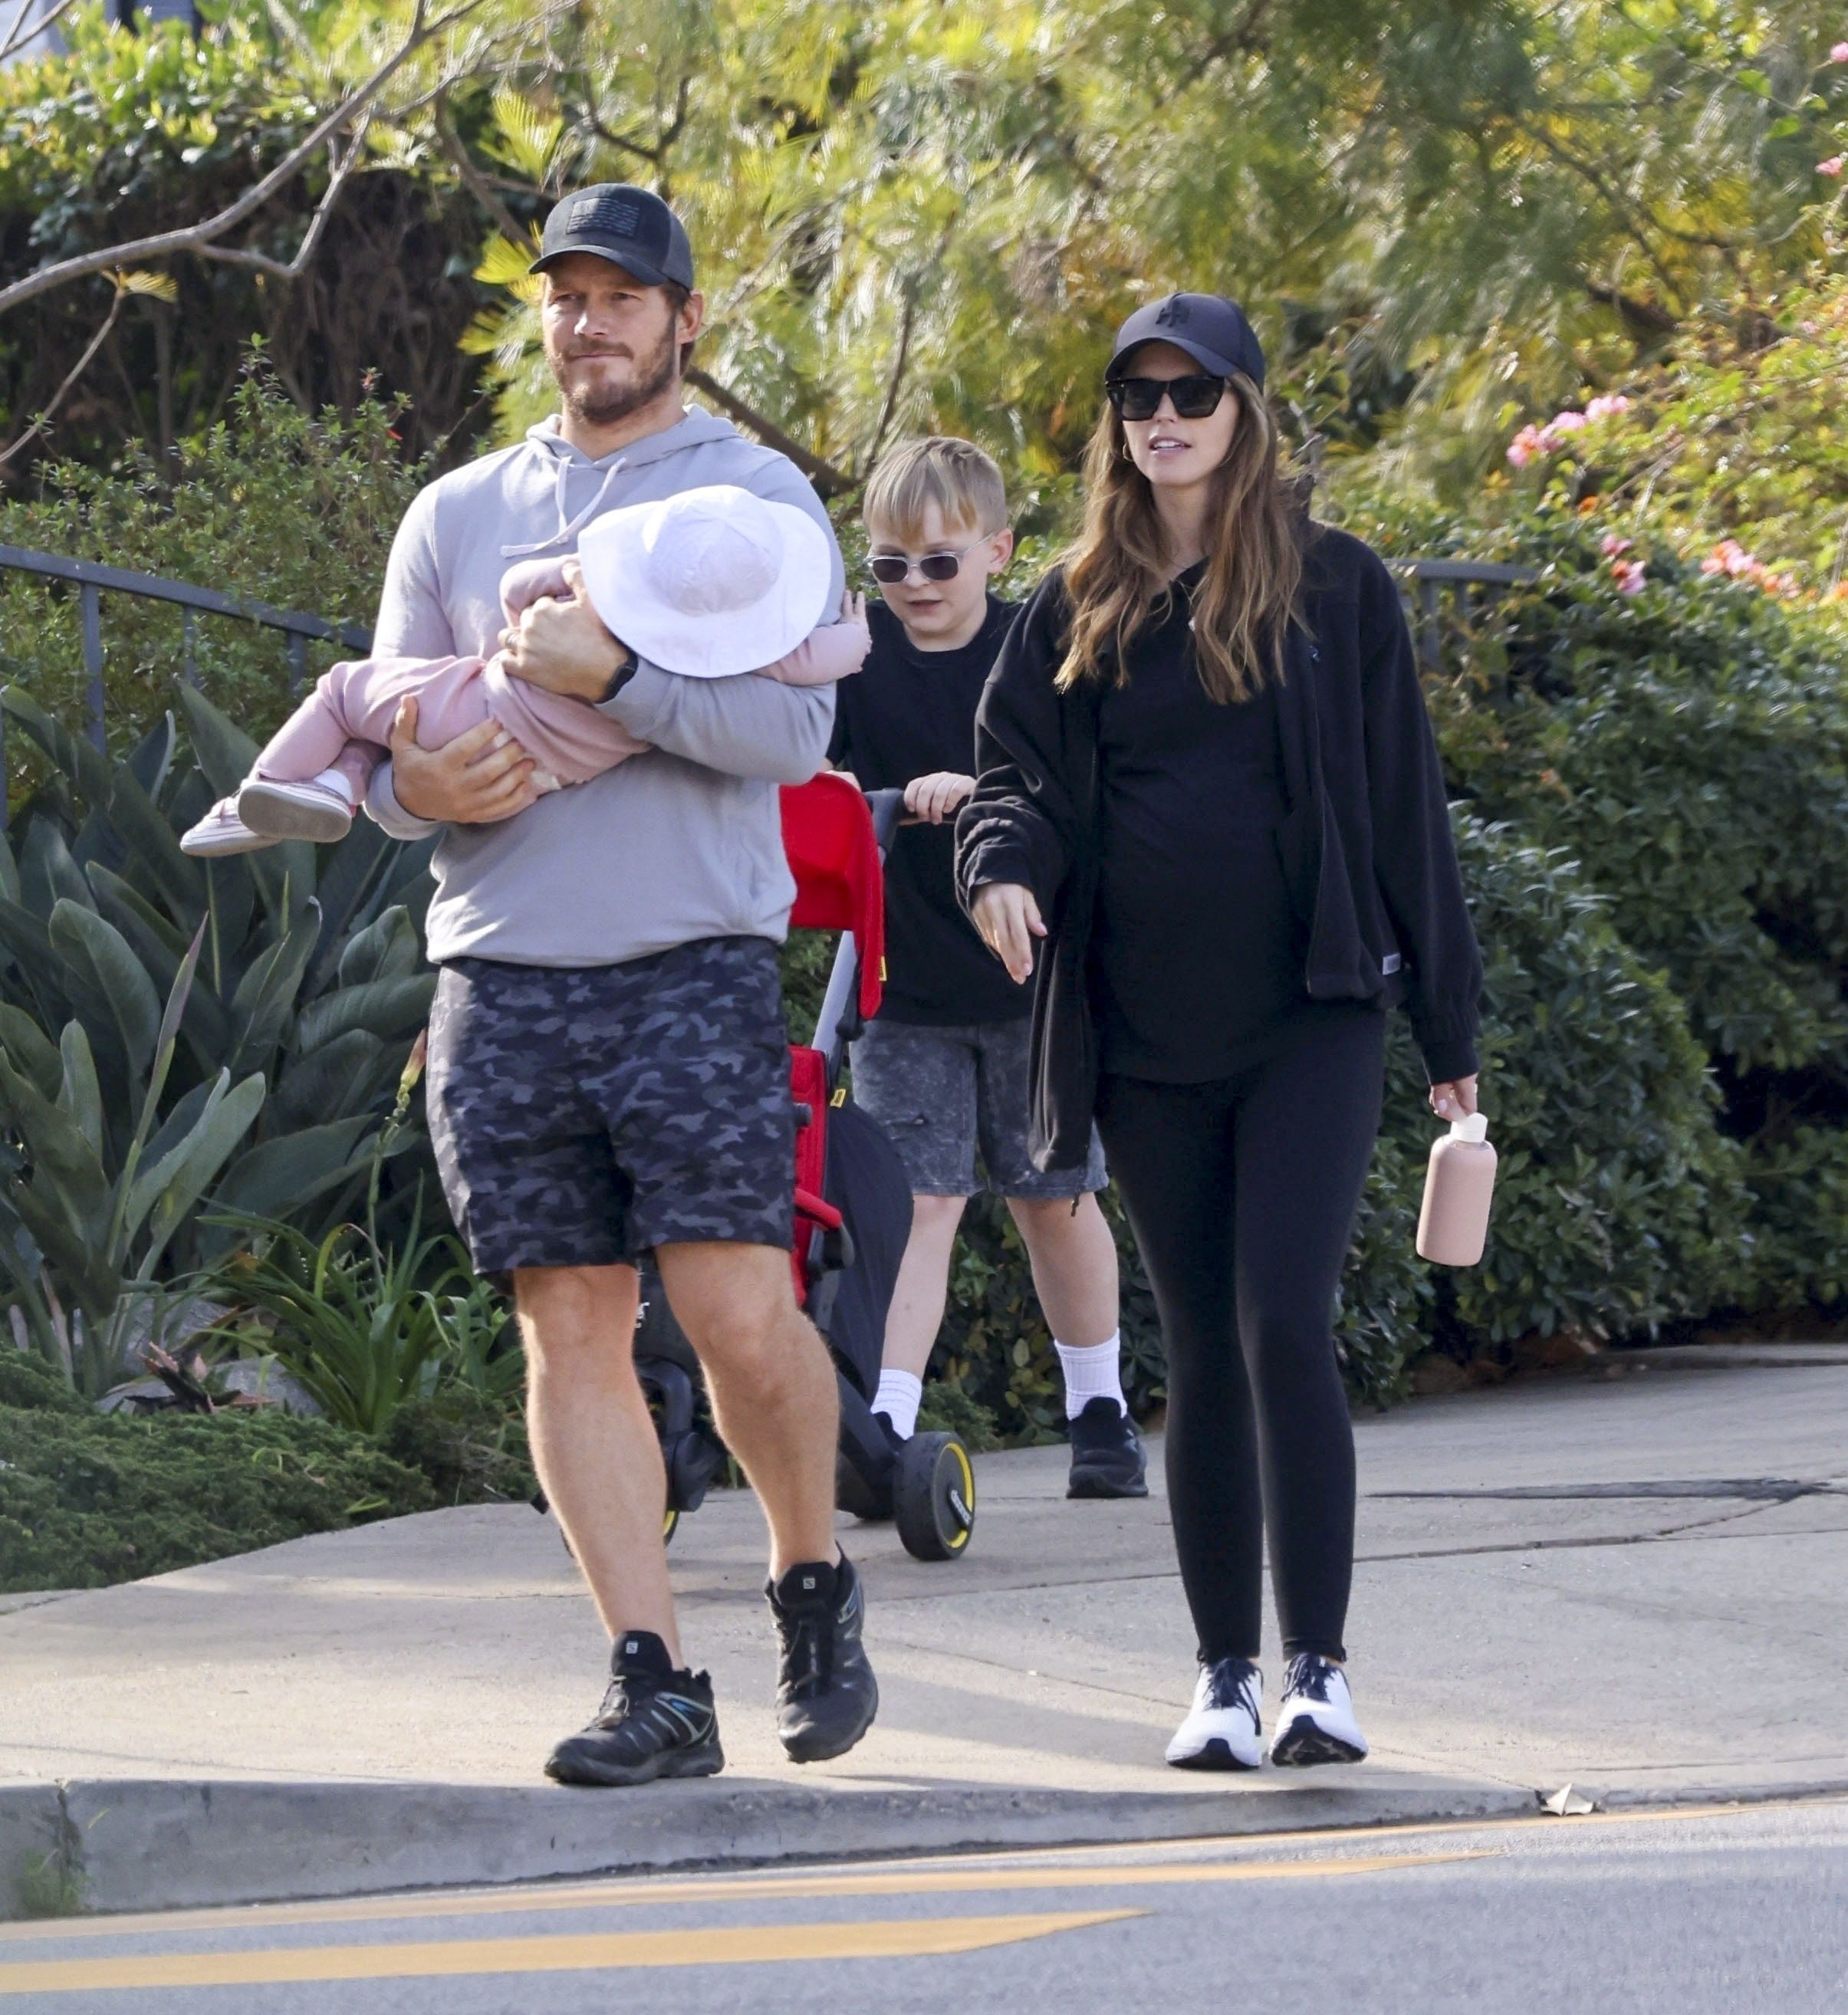 Salida familiar. Chris Pratt y Katherine Schwarzenegger disfrutaron de un día al aire libre con sus hijos. Fueron a dar una vuelta por las calles de su vecindario en Los Ángeles